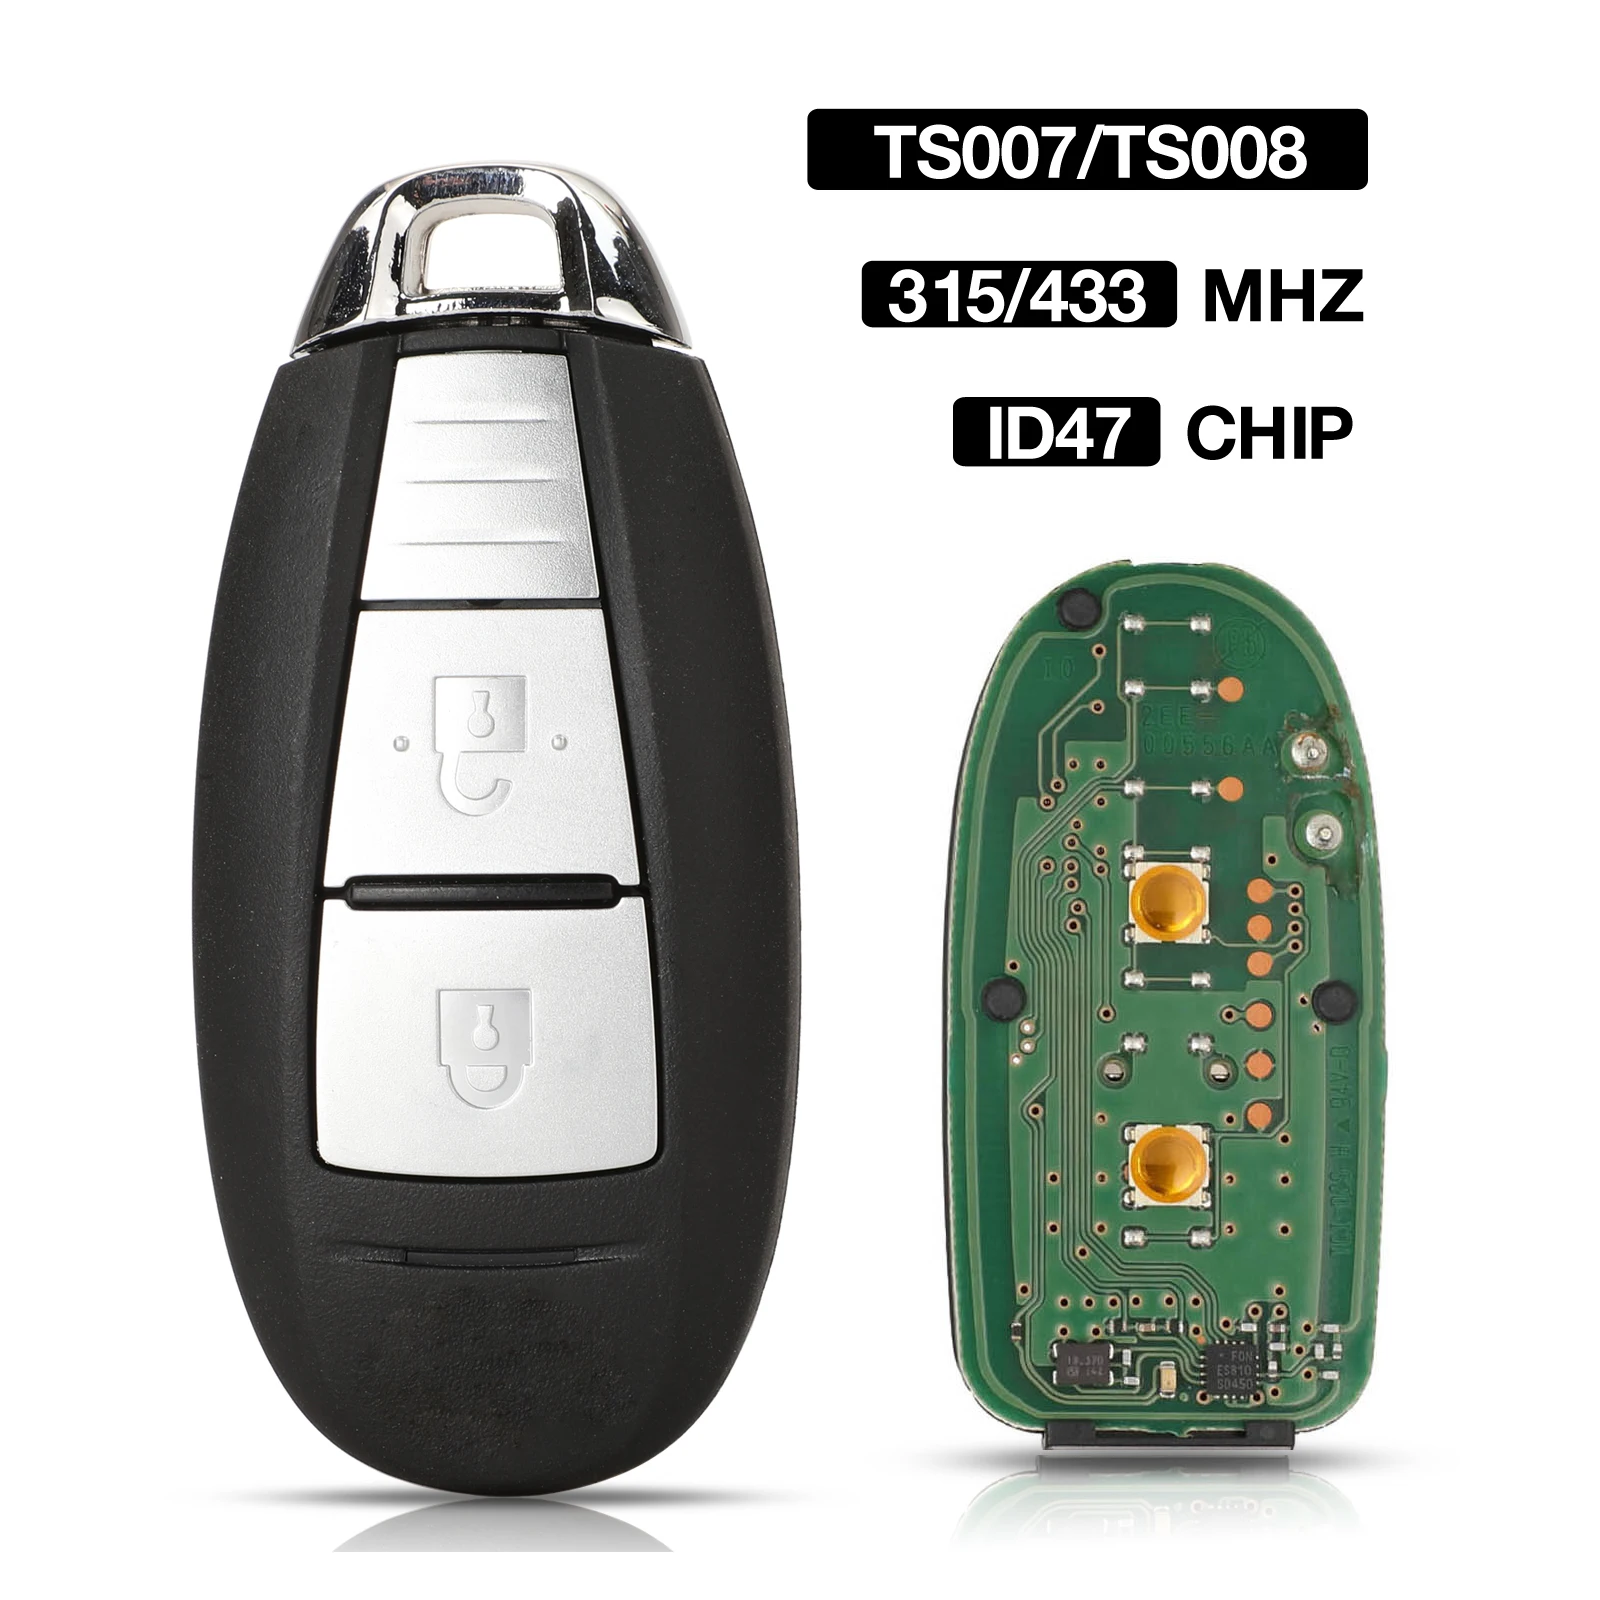 

jingyuqin 2BTN 315/433MHZ ID47 Chip Original Smart Remote Control Car Key For Suzuki Swift SX4 Vitara 2010-2015 TS007/TS008